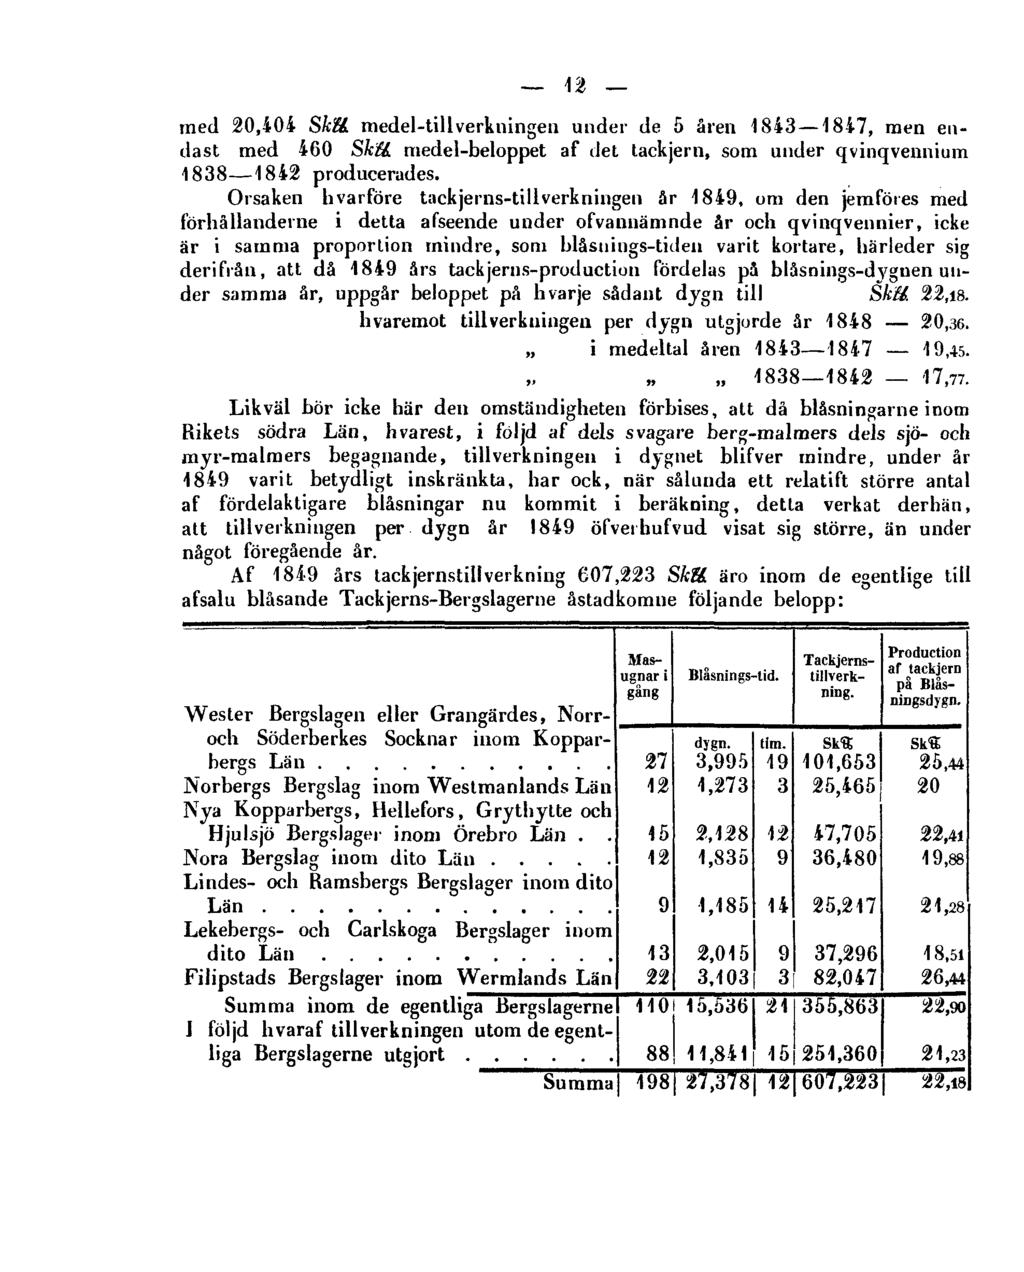 12 med 20,404 Shll. medel-tillverkningen under de 5 åren 1843 1847, men endast med 460 Skll. medel-beloppet af det tackjern, som under qvinqvennium 1838 1842 producerades.